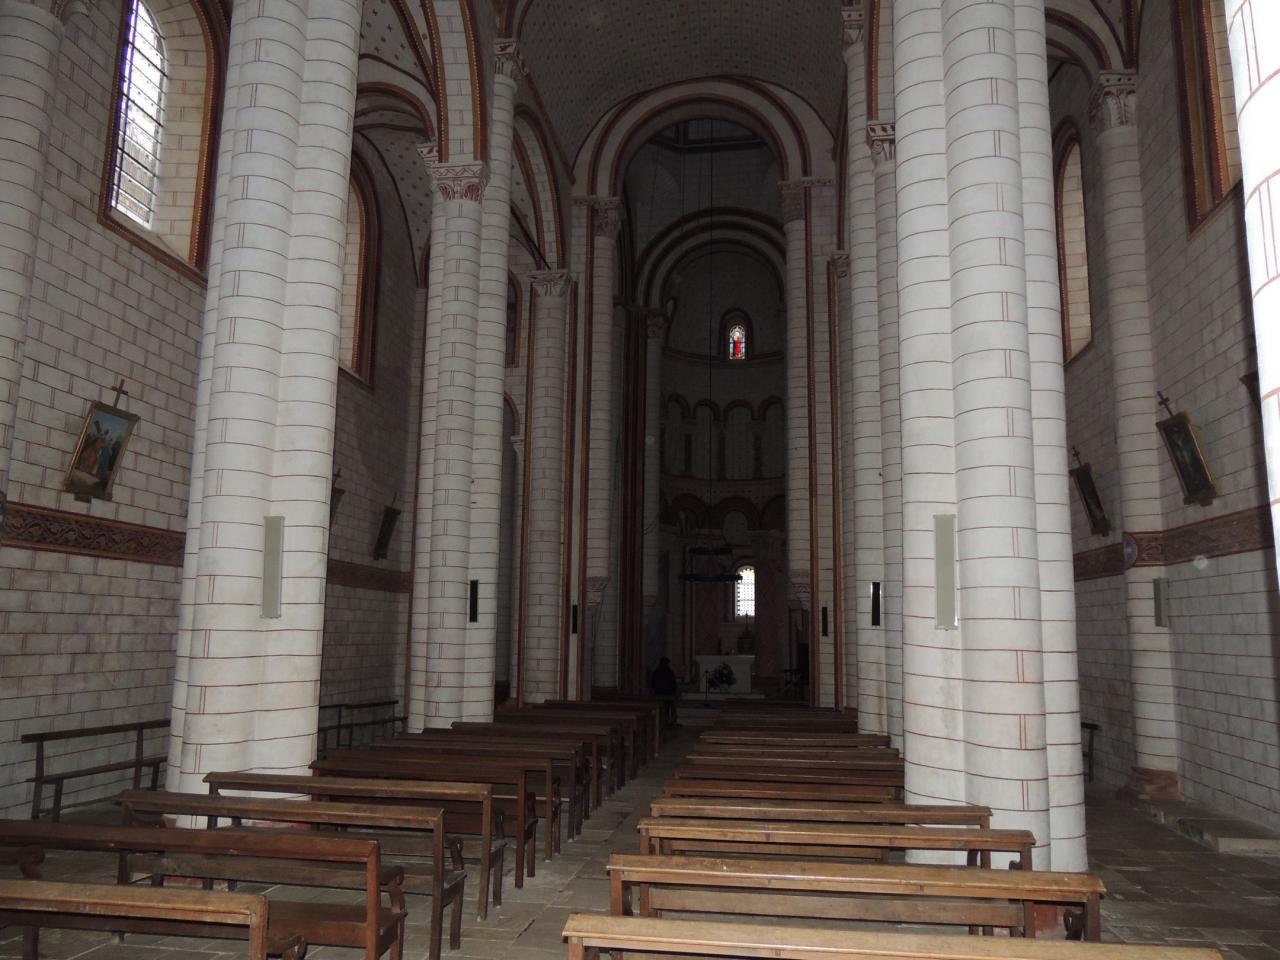 20151129_Chauvigny Interieur église St Pierre (1)